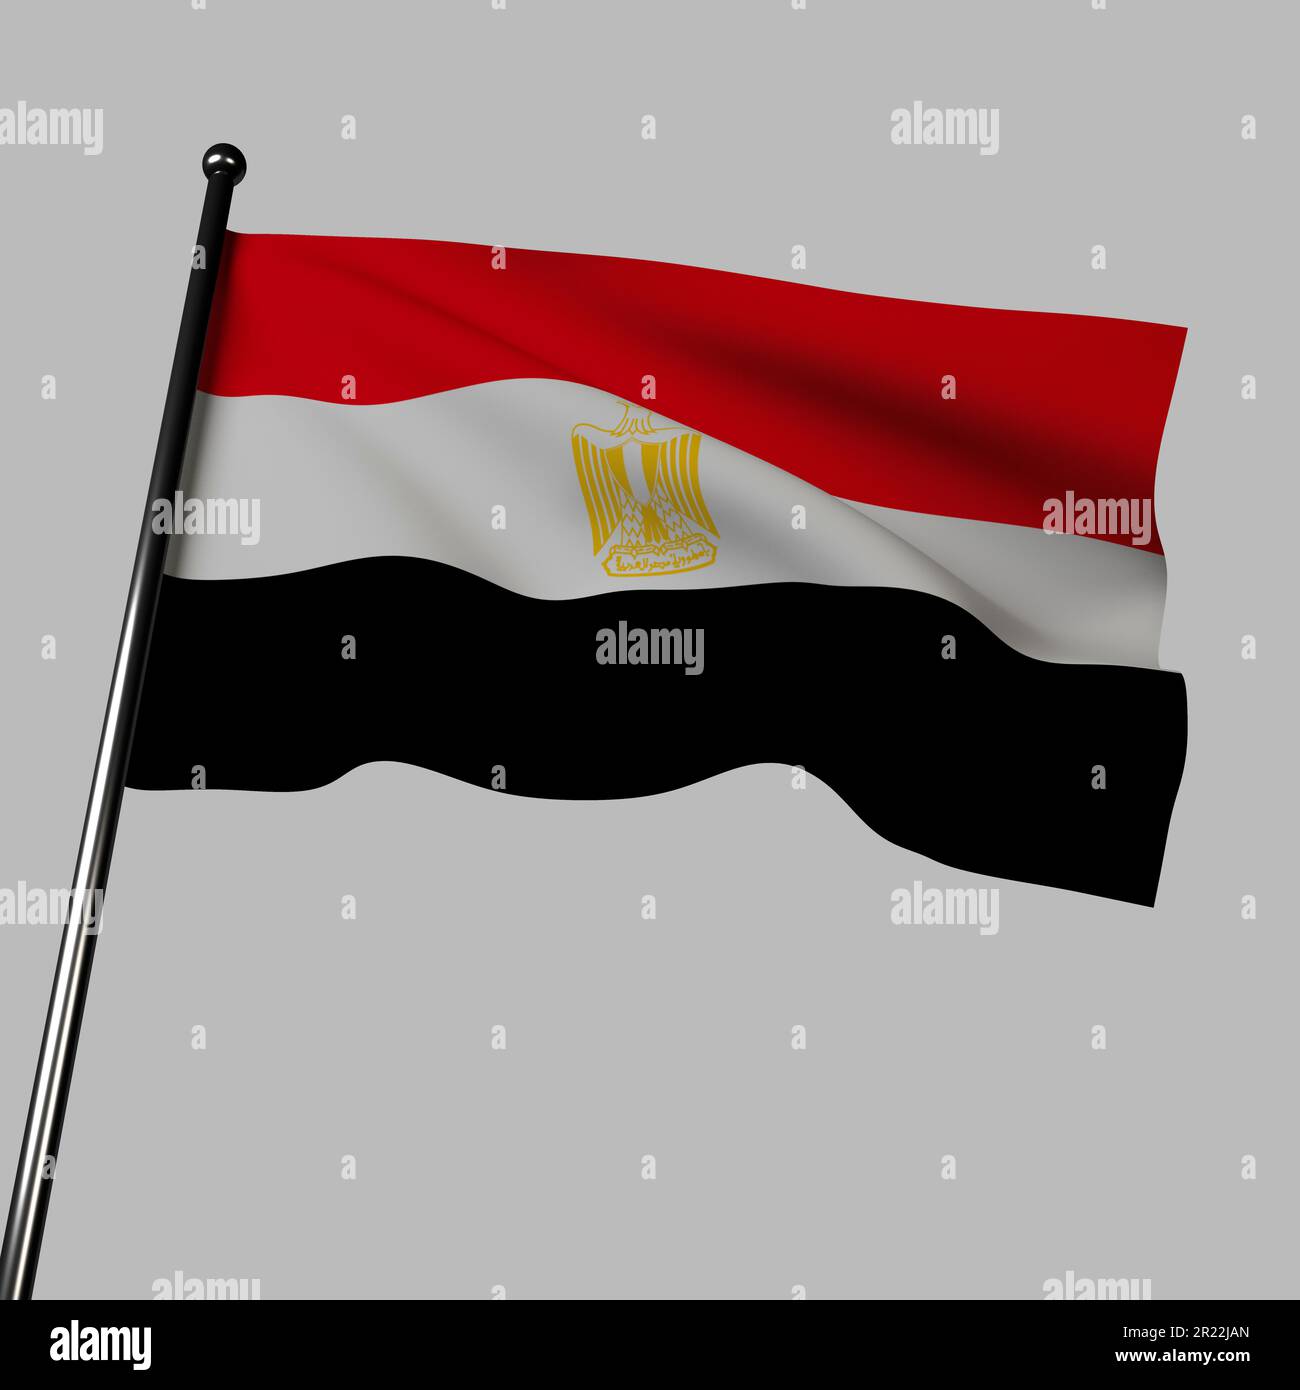 Die ägyptische Flagge 3D, die sich in Grau bewegt, hat rote, weiße und schwarze Streifen mit dem goldenen Adler von Saladin. Farben stehen für Unabhängigkeitskampf. Adler Stockfoto